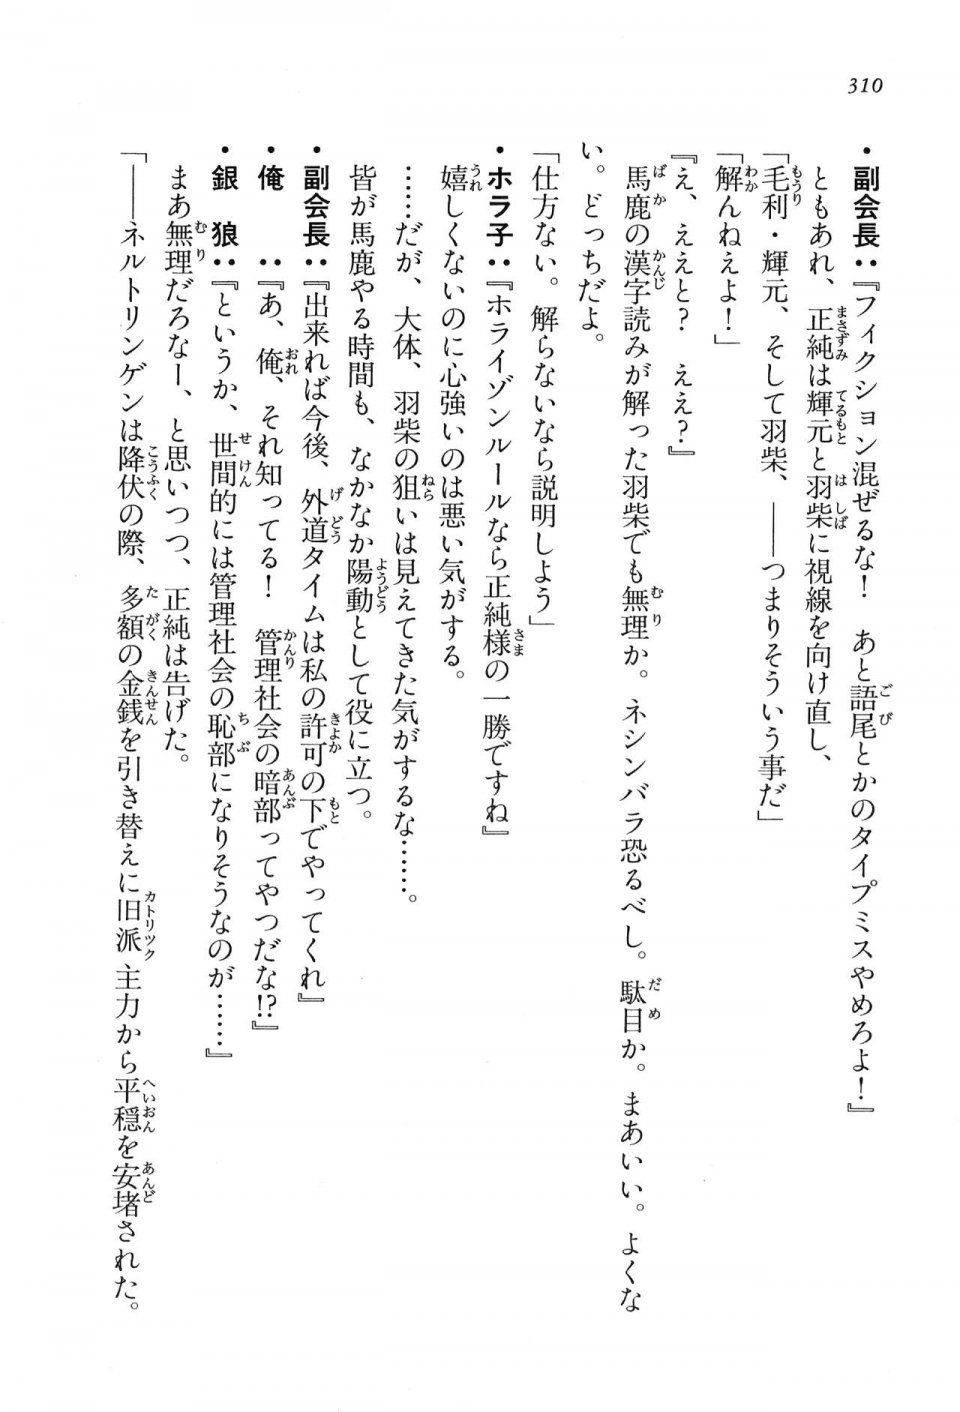 Kyoukai Senjou no Horizon LN Vol 16(7A) - Photo #310